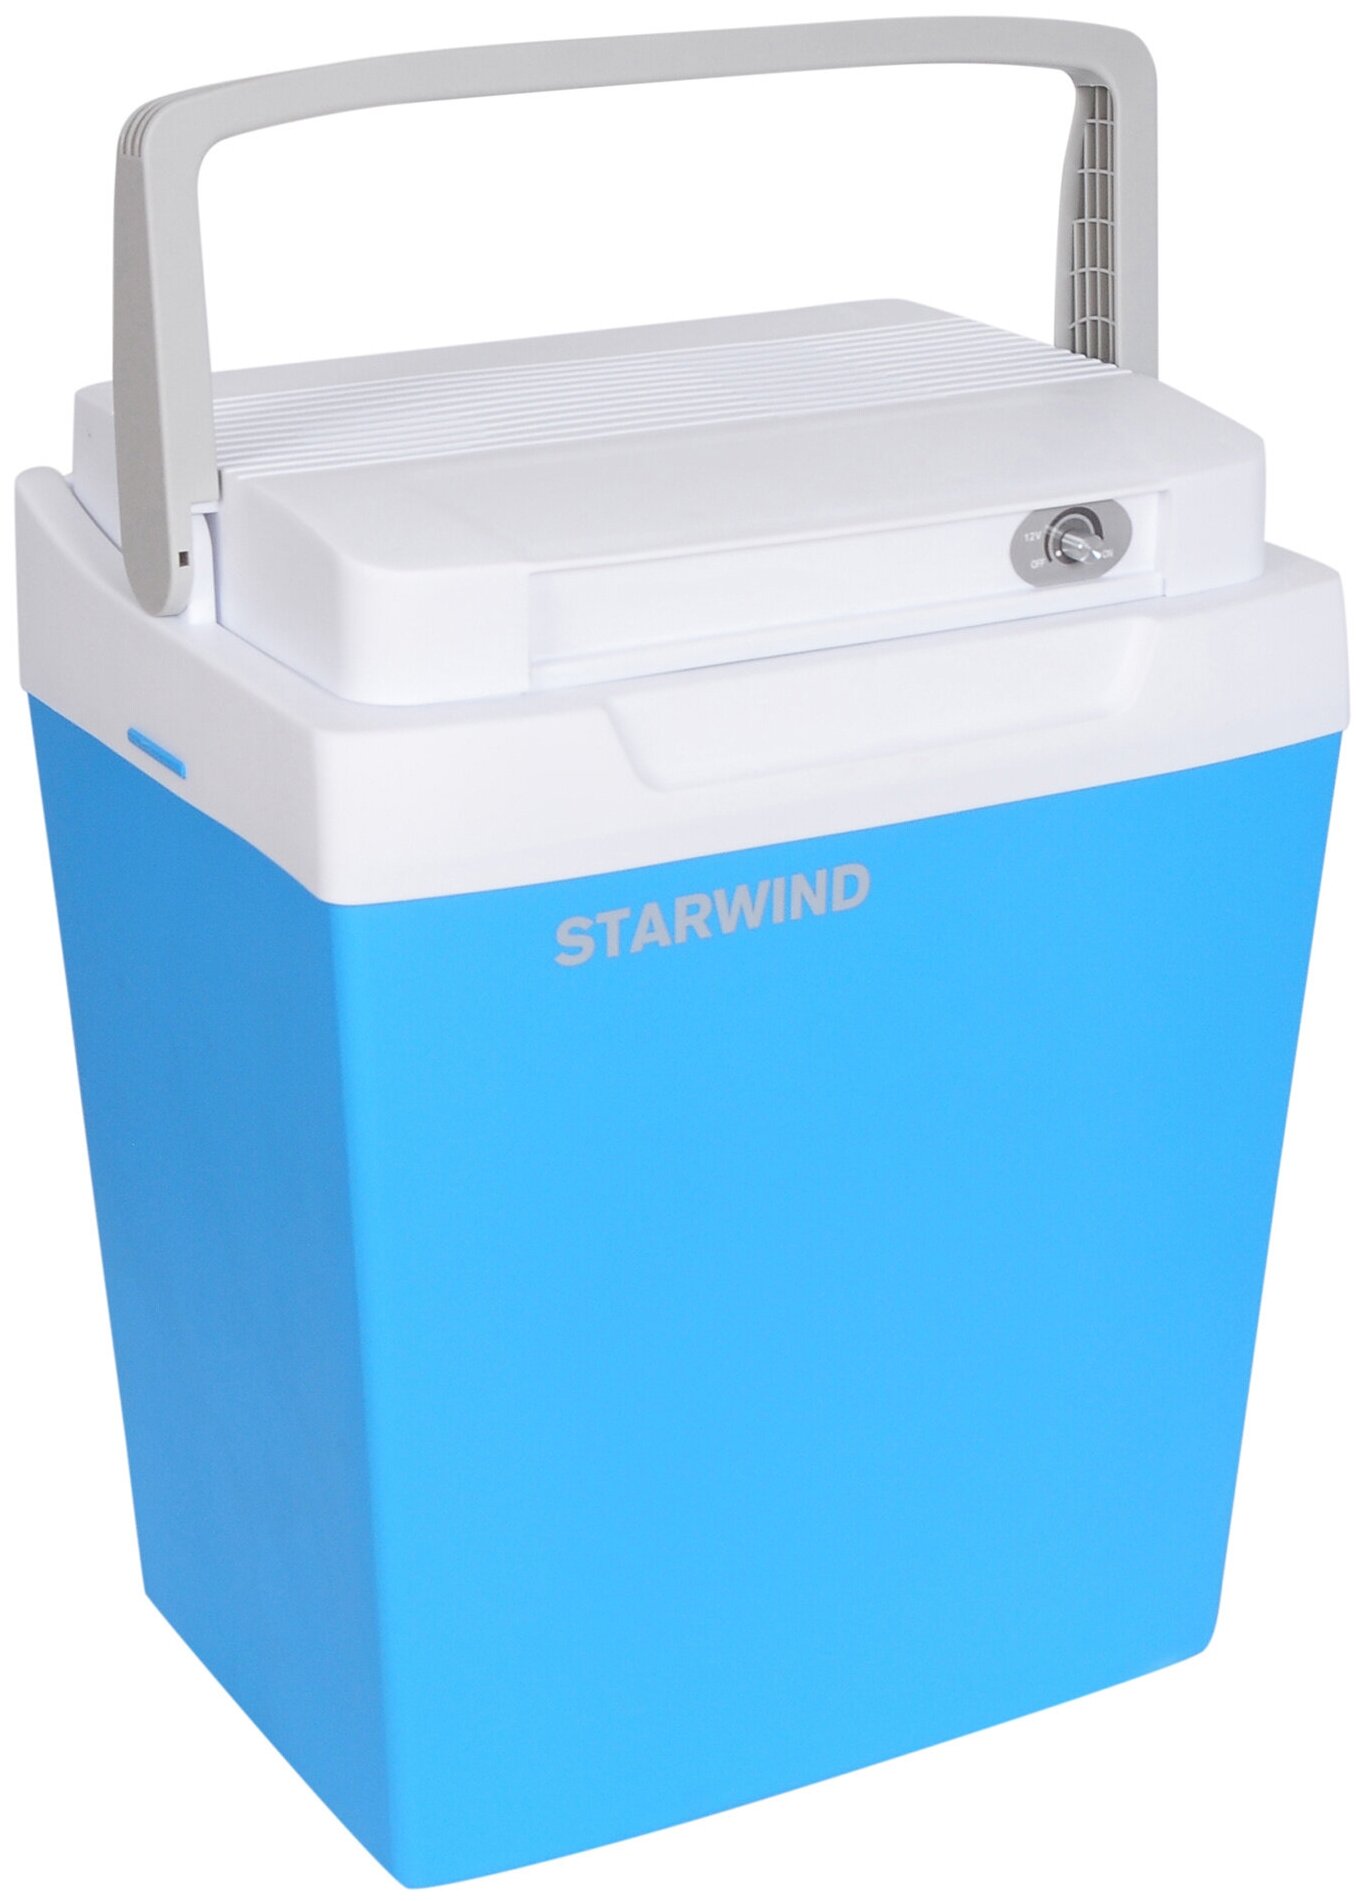 Автохолодильник Starwind CF-129 479032, синий, серый, 29 л